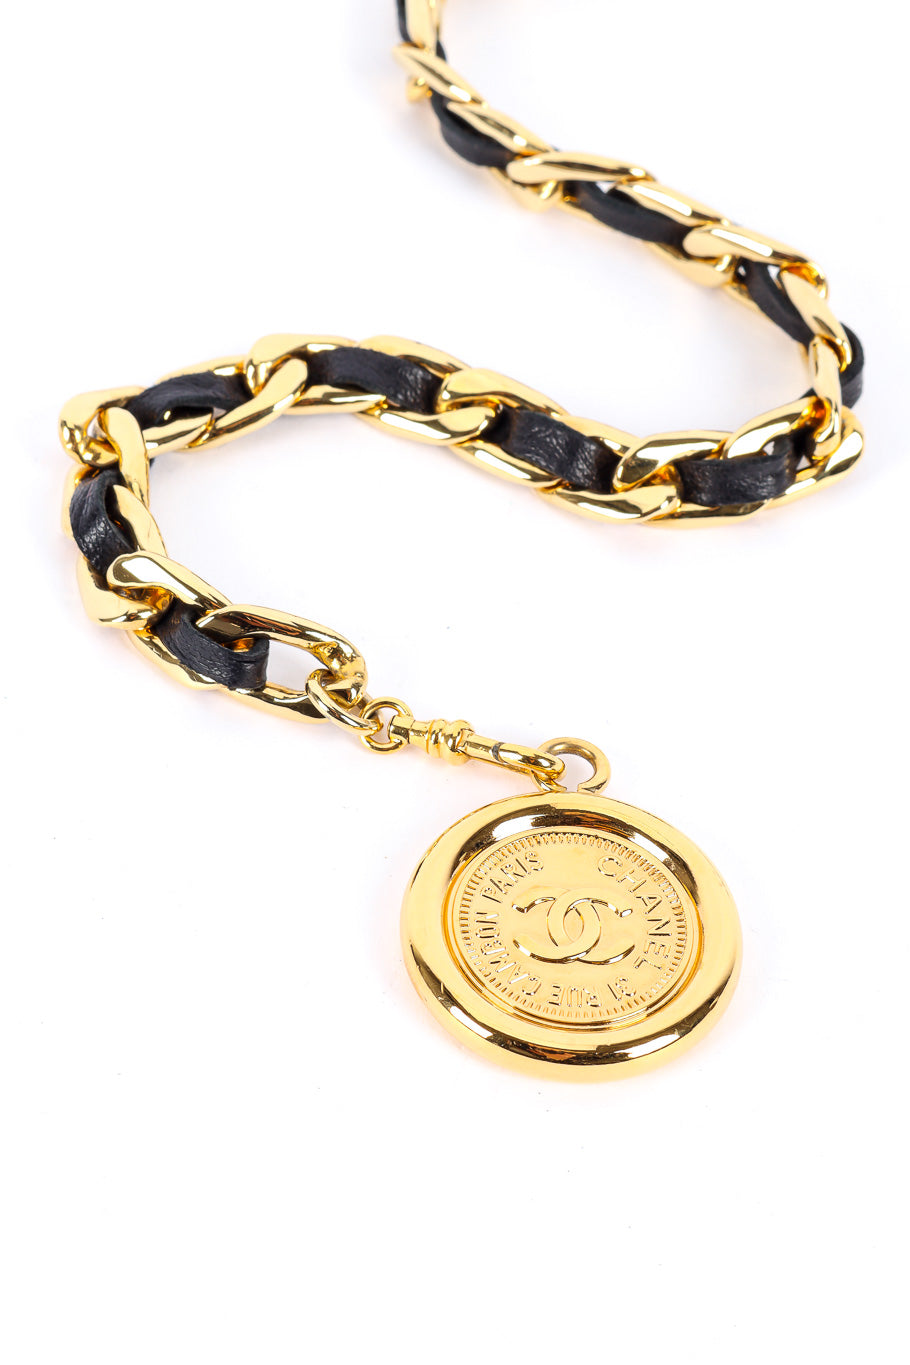 Vintage Chanel Woven Leather Chain Belt end charm closeup @Recessla